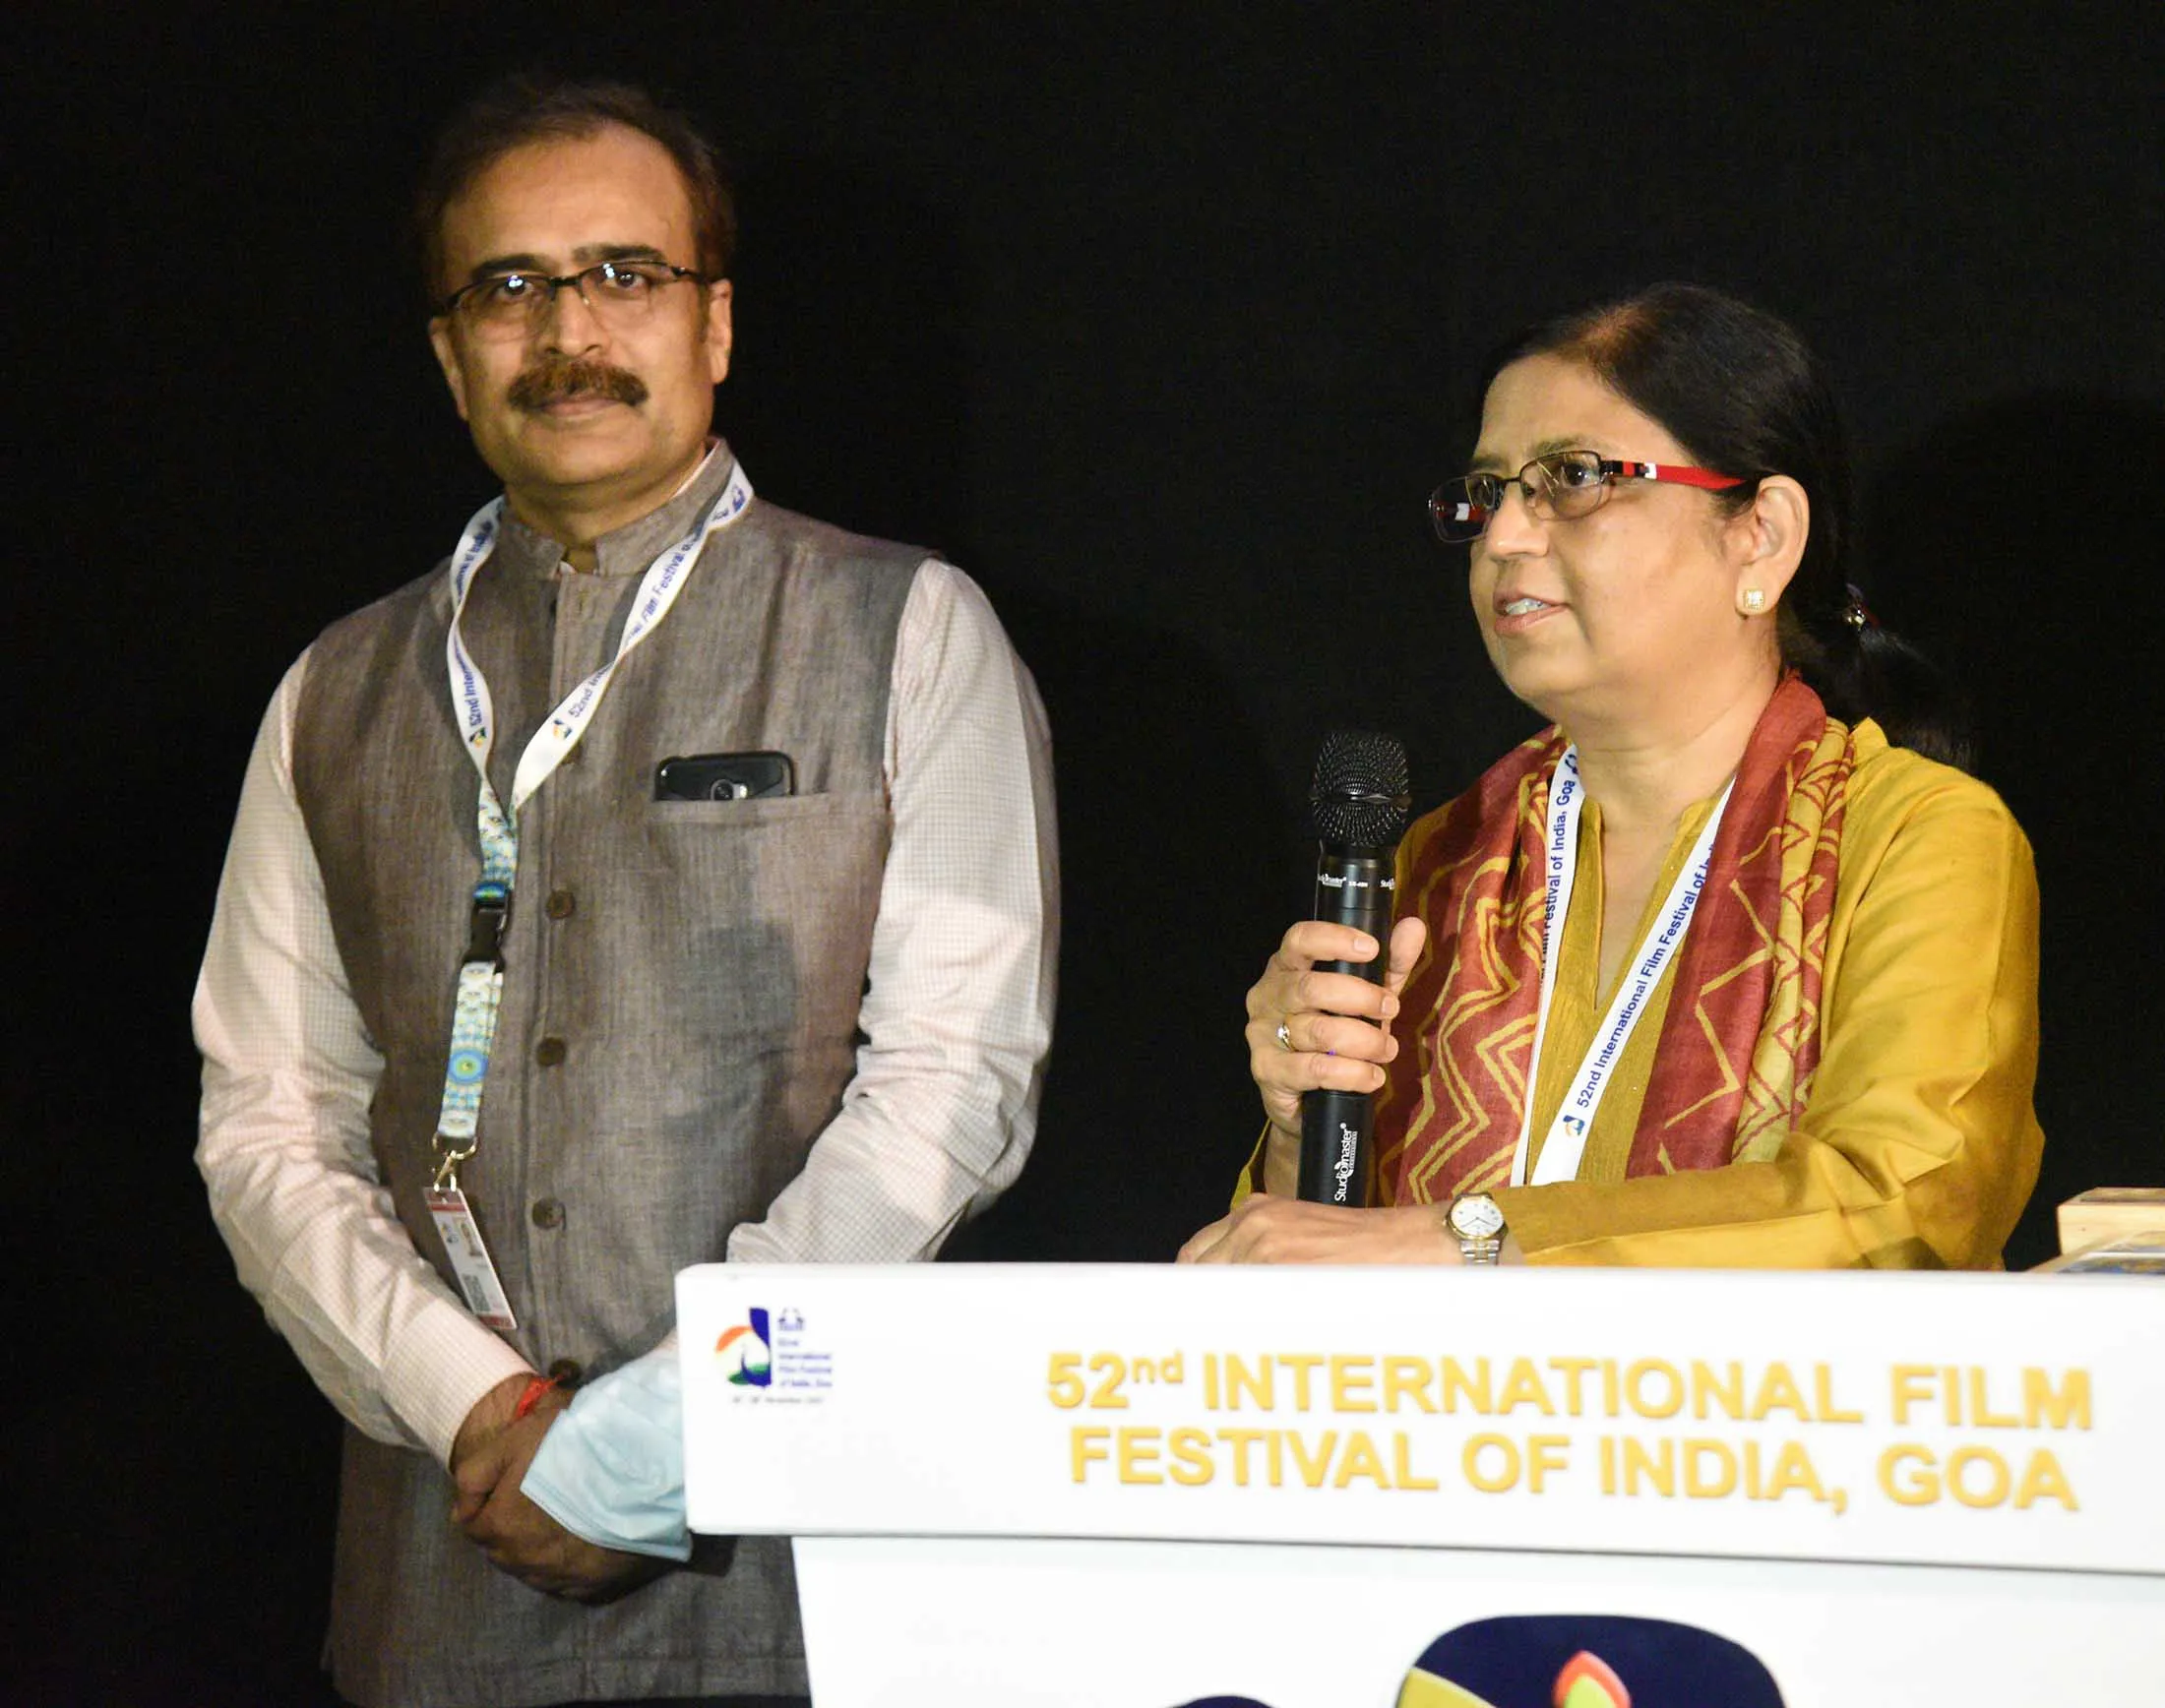 52nd International FilmFestival of India की खूबसूरत शाम में समानित ओर नज़र यह सितारें